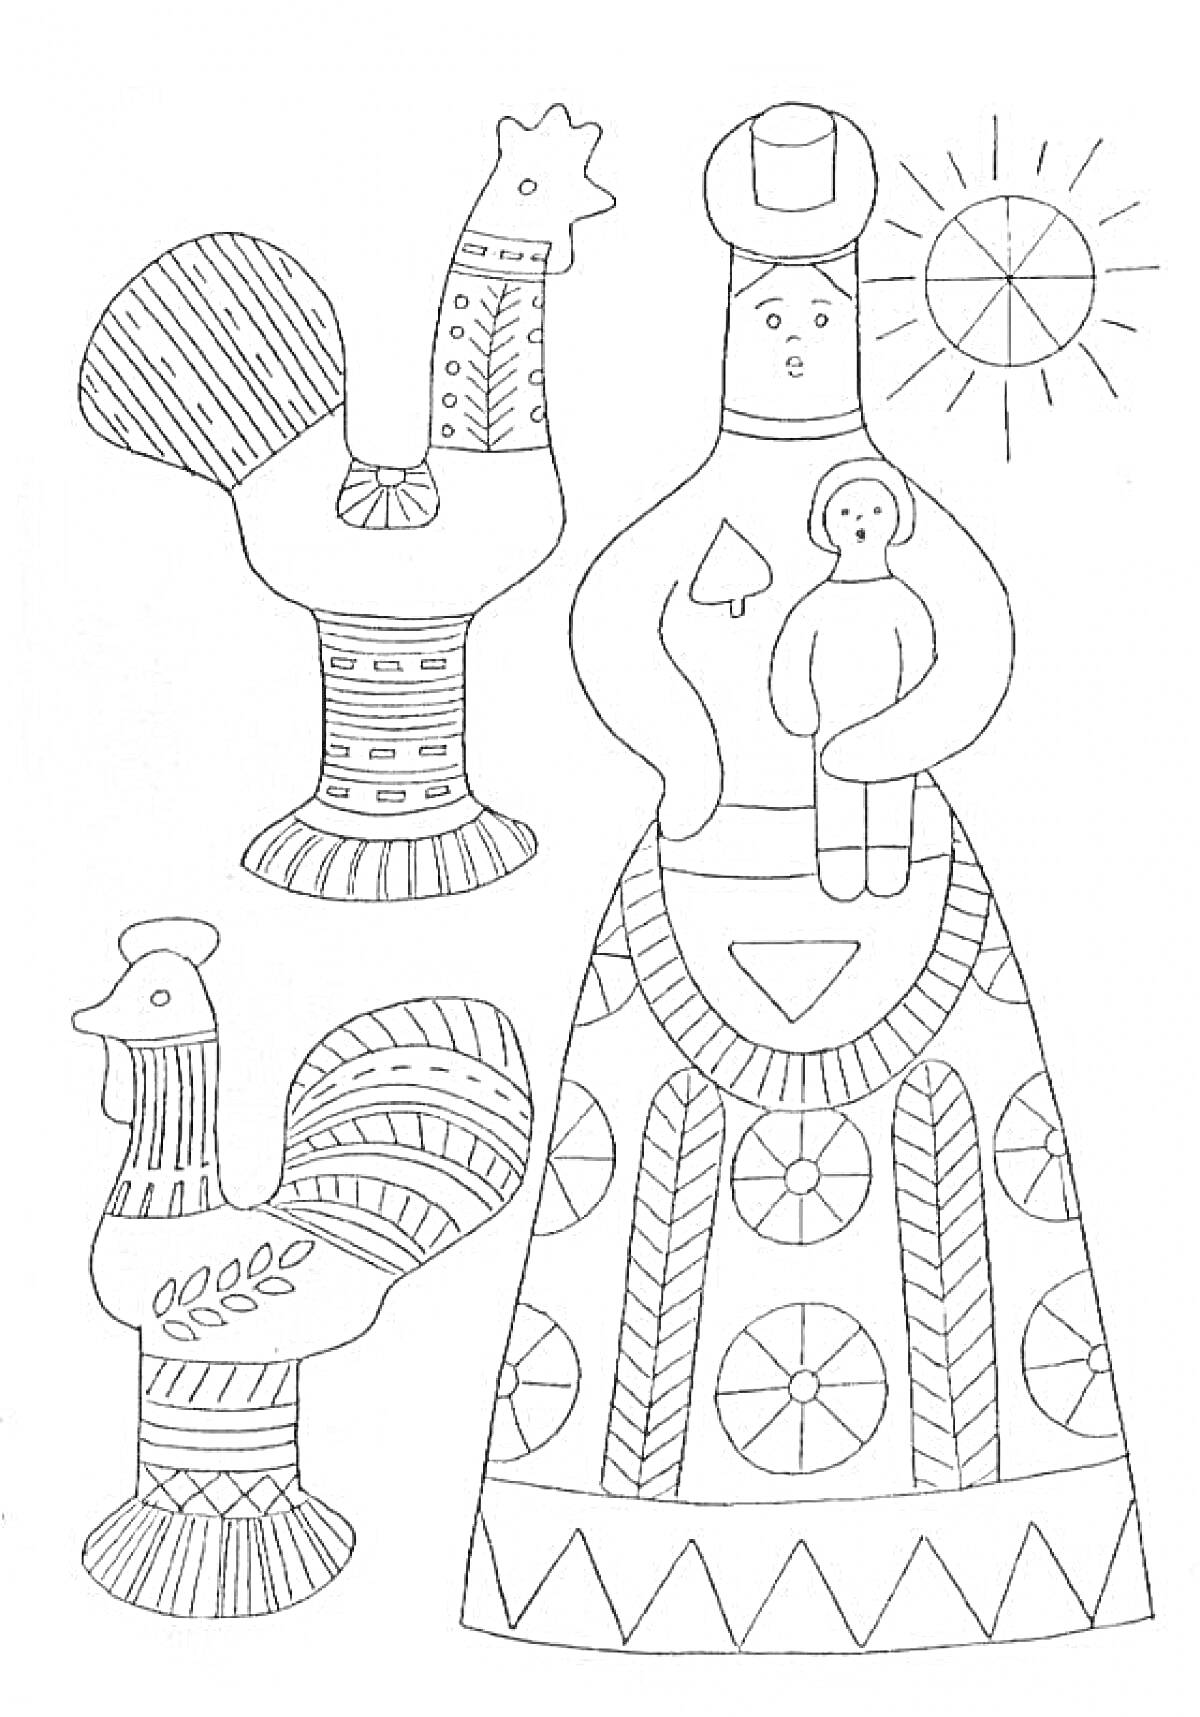 Раскраска Филимоновская игрушка - женщина с ребенком, два петуха, солнце